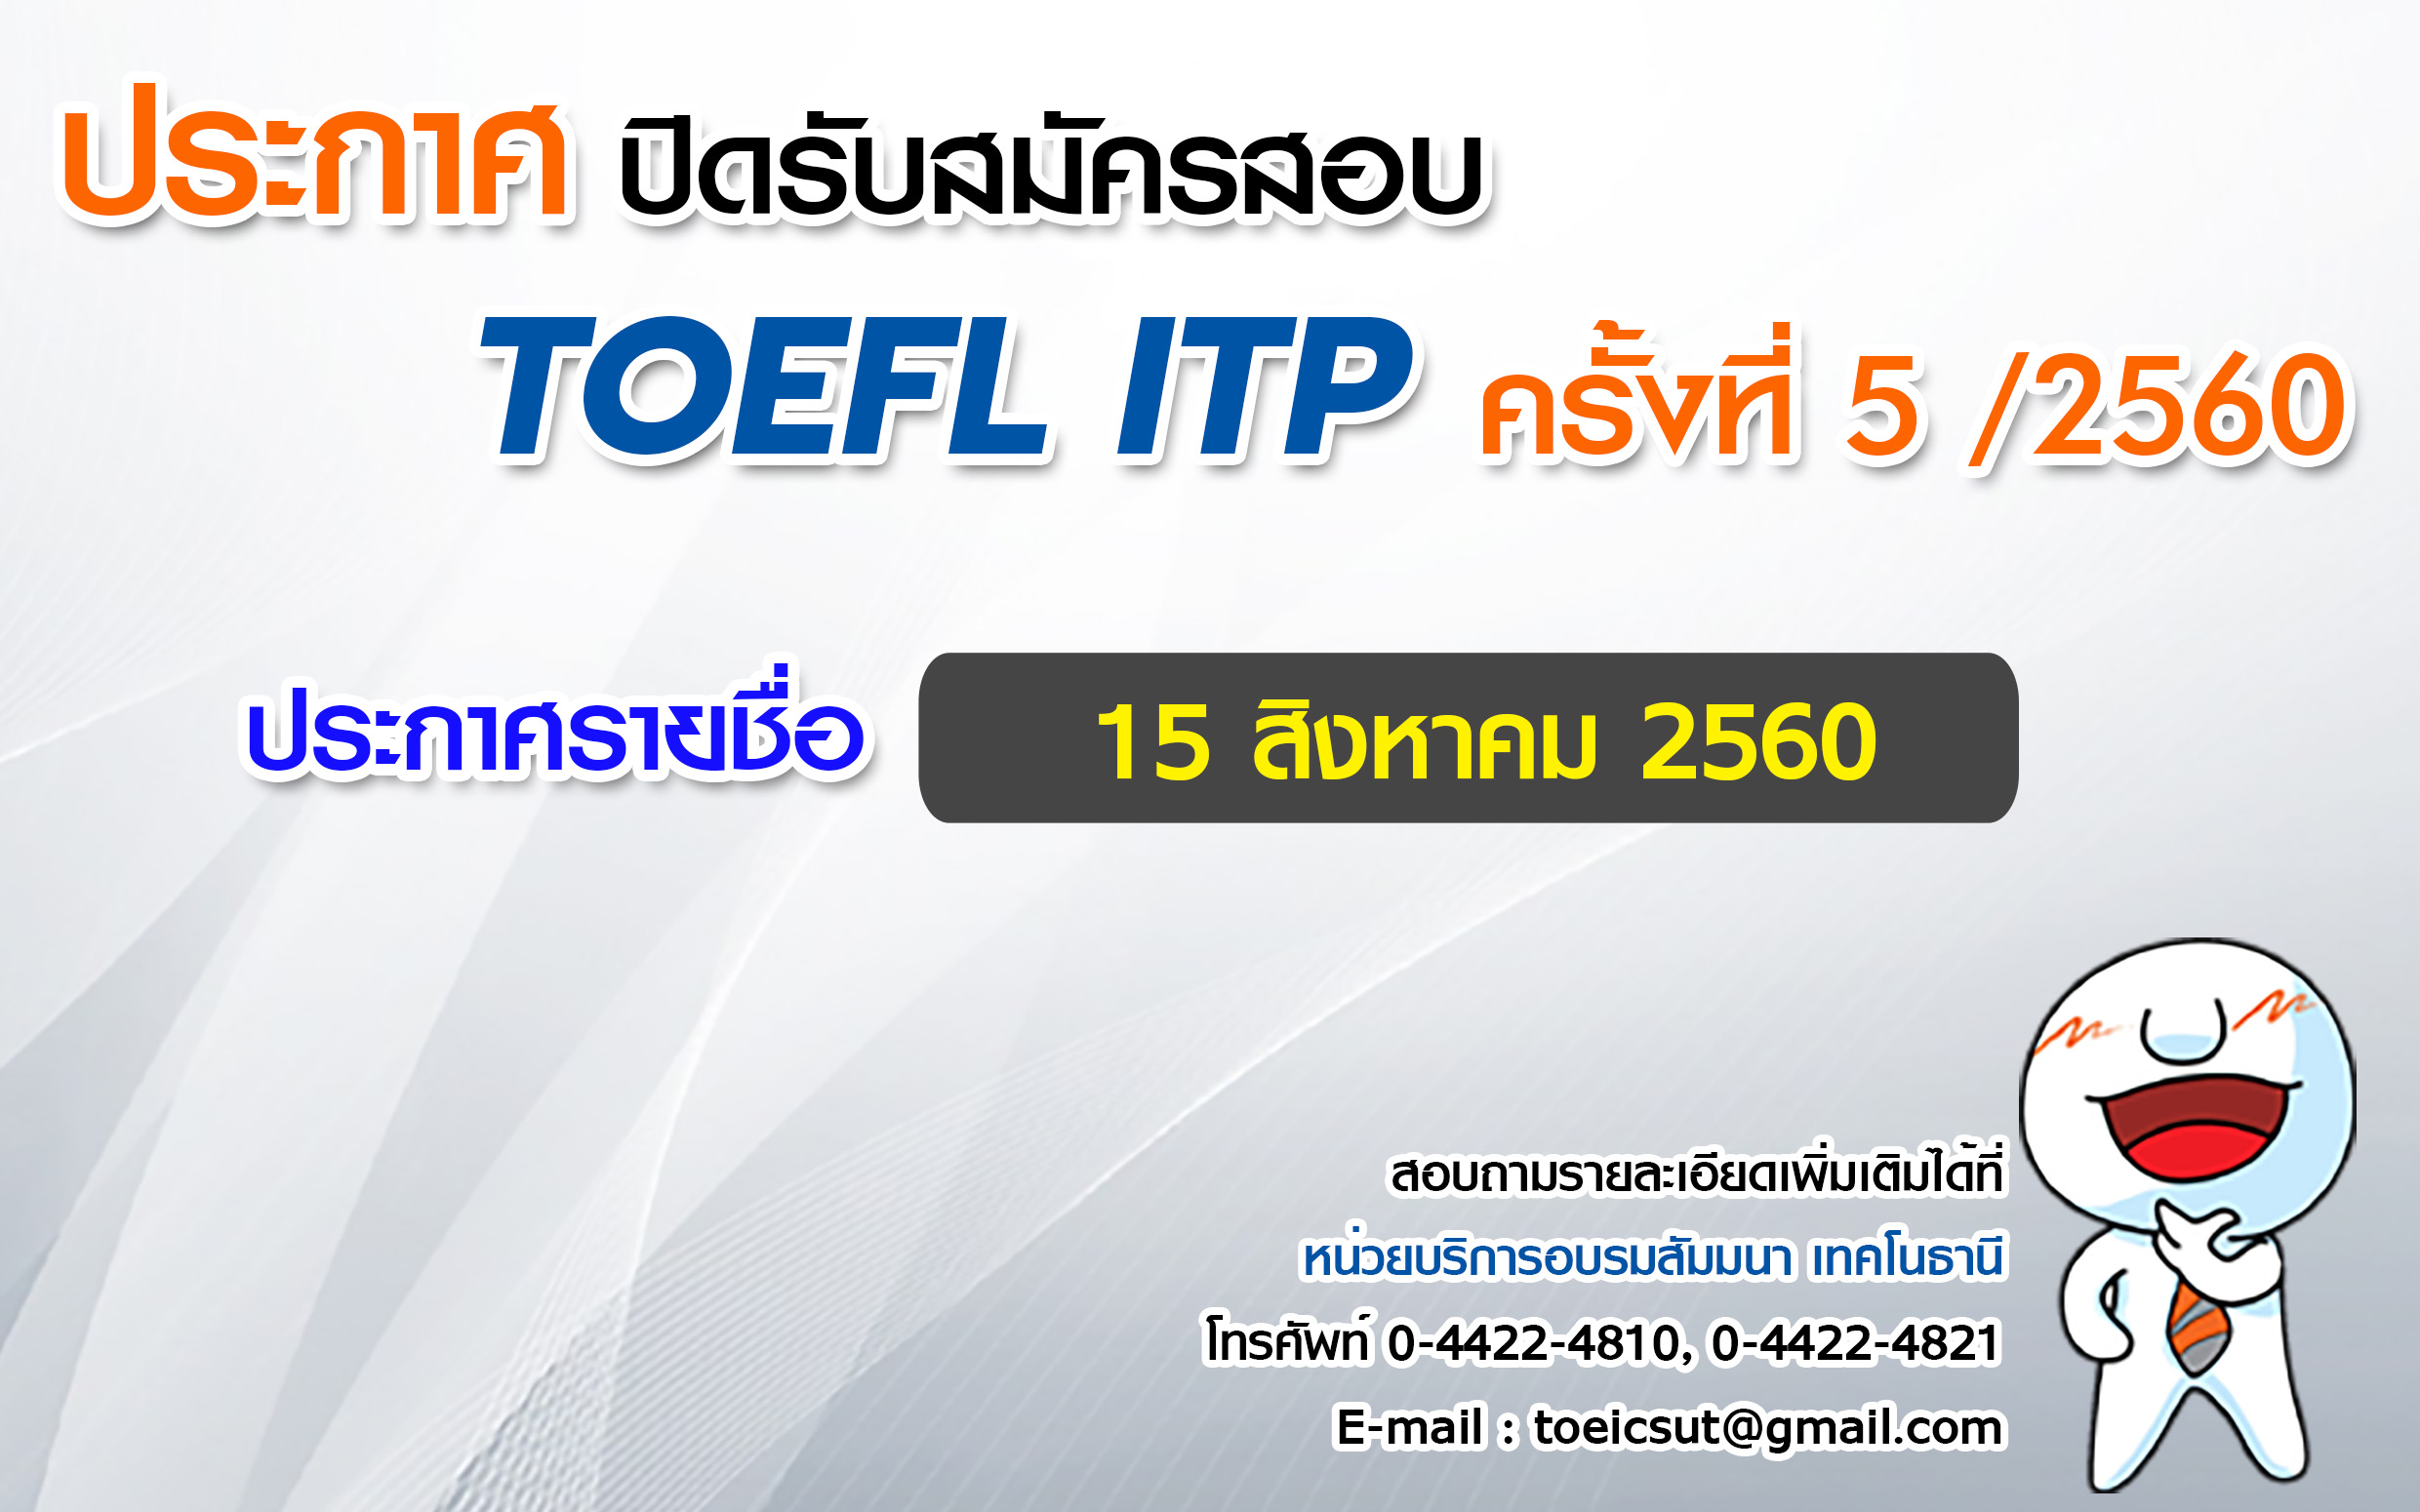 ปิดรับสมัครสอบ TOEFL ITP  ครั้งที่ 5/2560